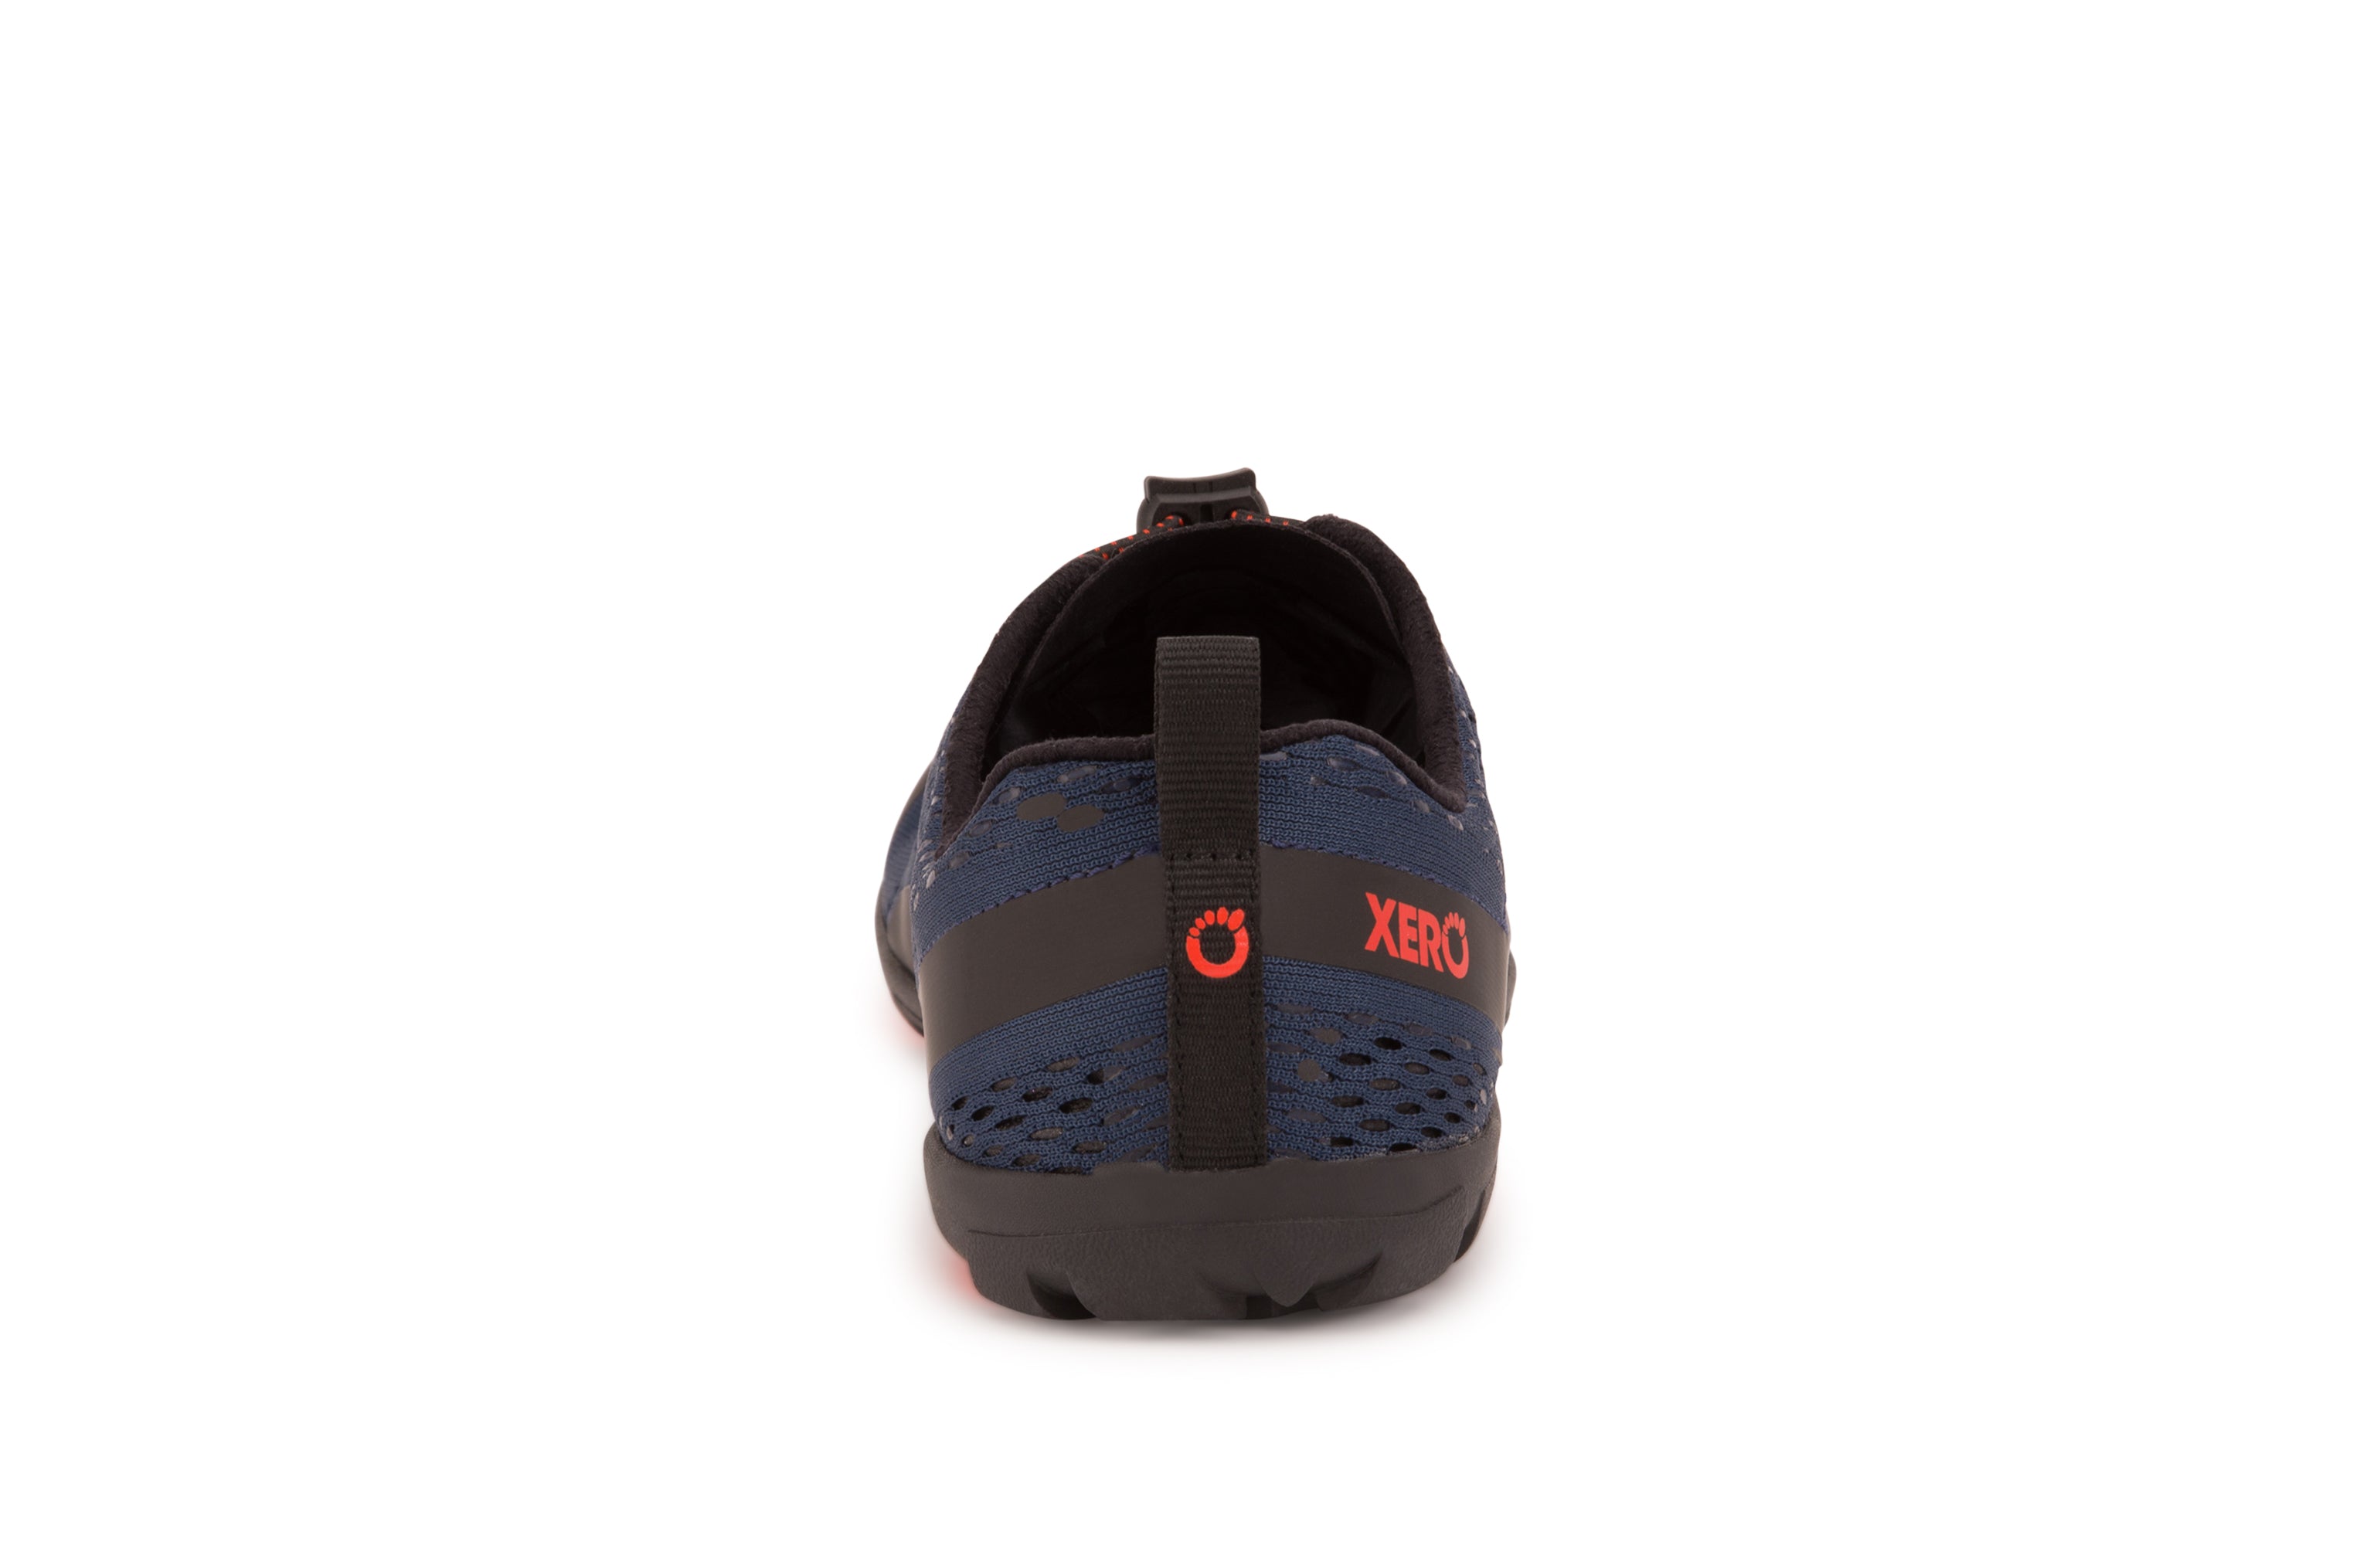 Xero Shoes Aqua X Sport barfods vand træningssko til mænd i farven moonlit blue, bagfra